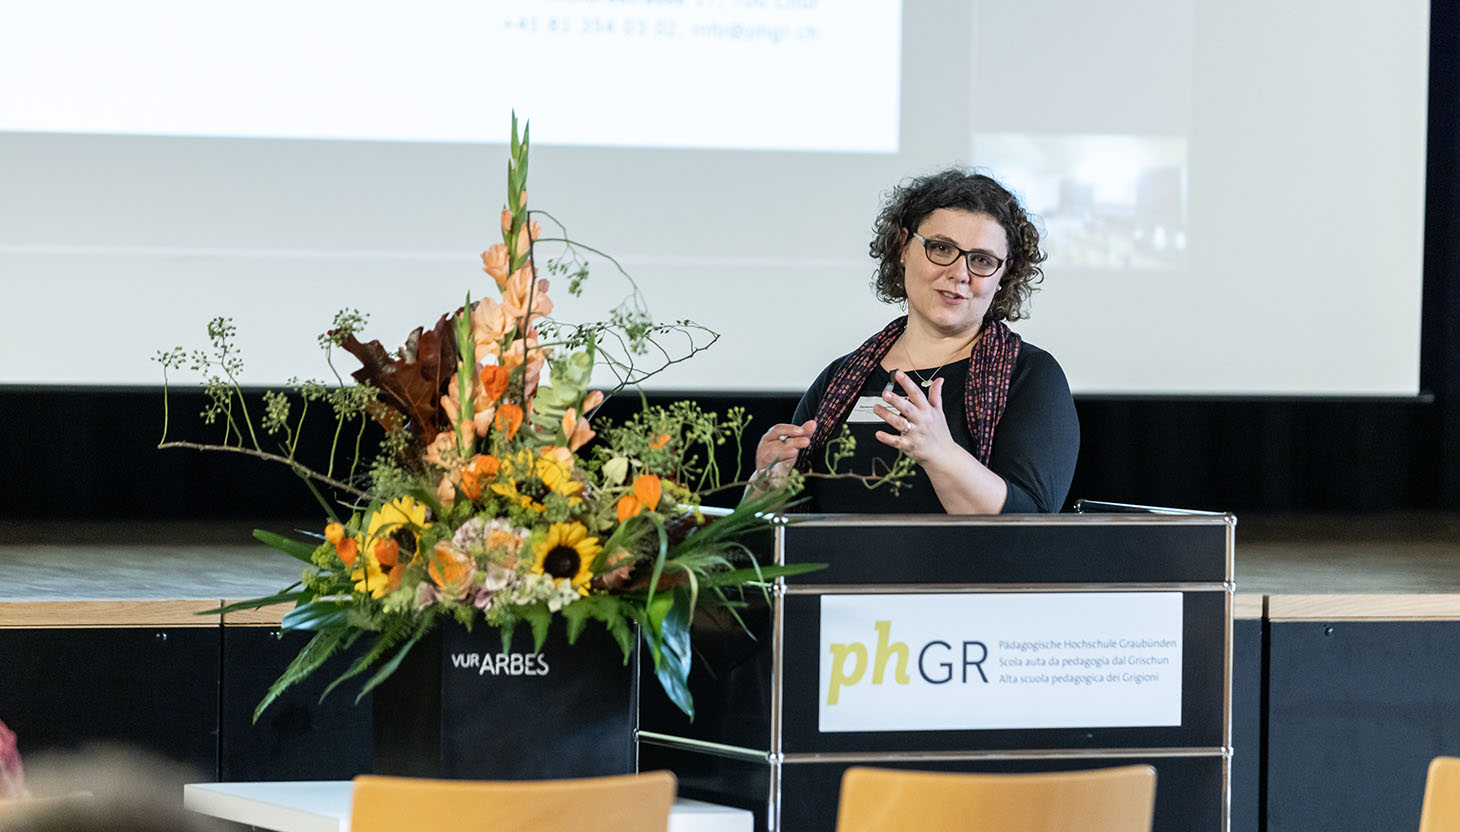 Ha discurrì da las Grischunas e dals Grischuns bi-dialectals: Dr. Susanne Oberholzer, manadra da la dieta e collavuratura scientifica da la SAP dal Grischun.